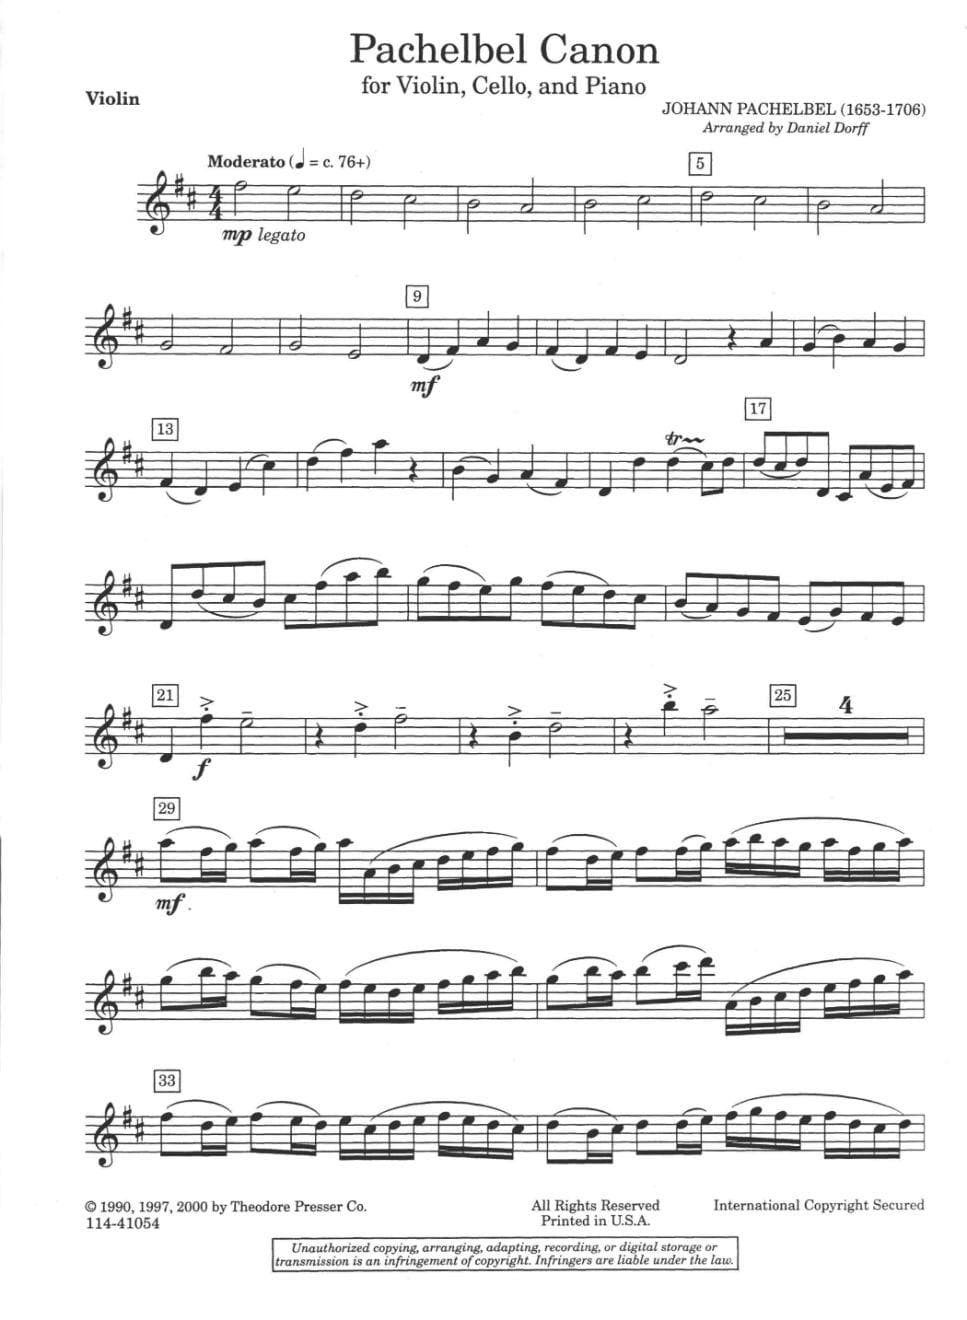 Pachelbel, Johann - Canon for Piano Trio Violin, Cello, and Piano Arranged by Daniel Dorff Published by Theodore Presser Company